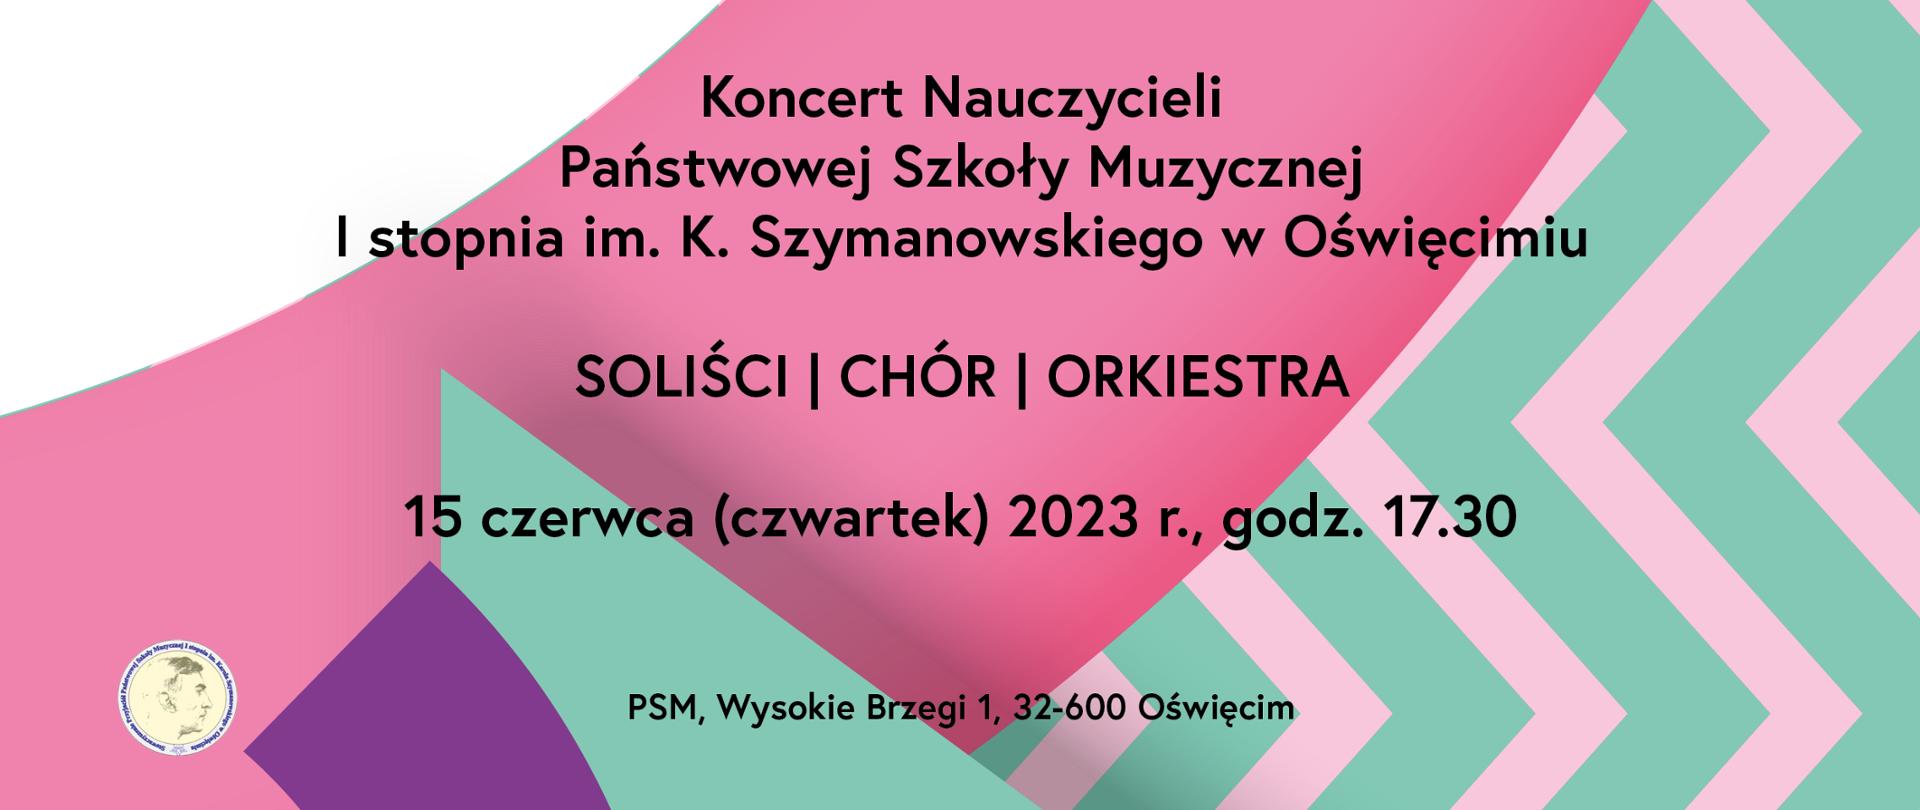 Afisz z zaproszeniem na koncert nauczycieli pt. "Pół żartem pół serio", który odbędzie się 15 czerwca 2023 r. o godzinie 17:30 w sali koncertowej.